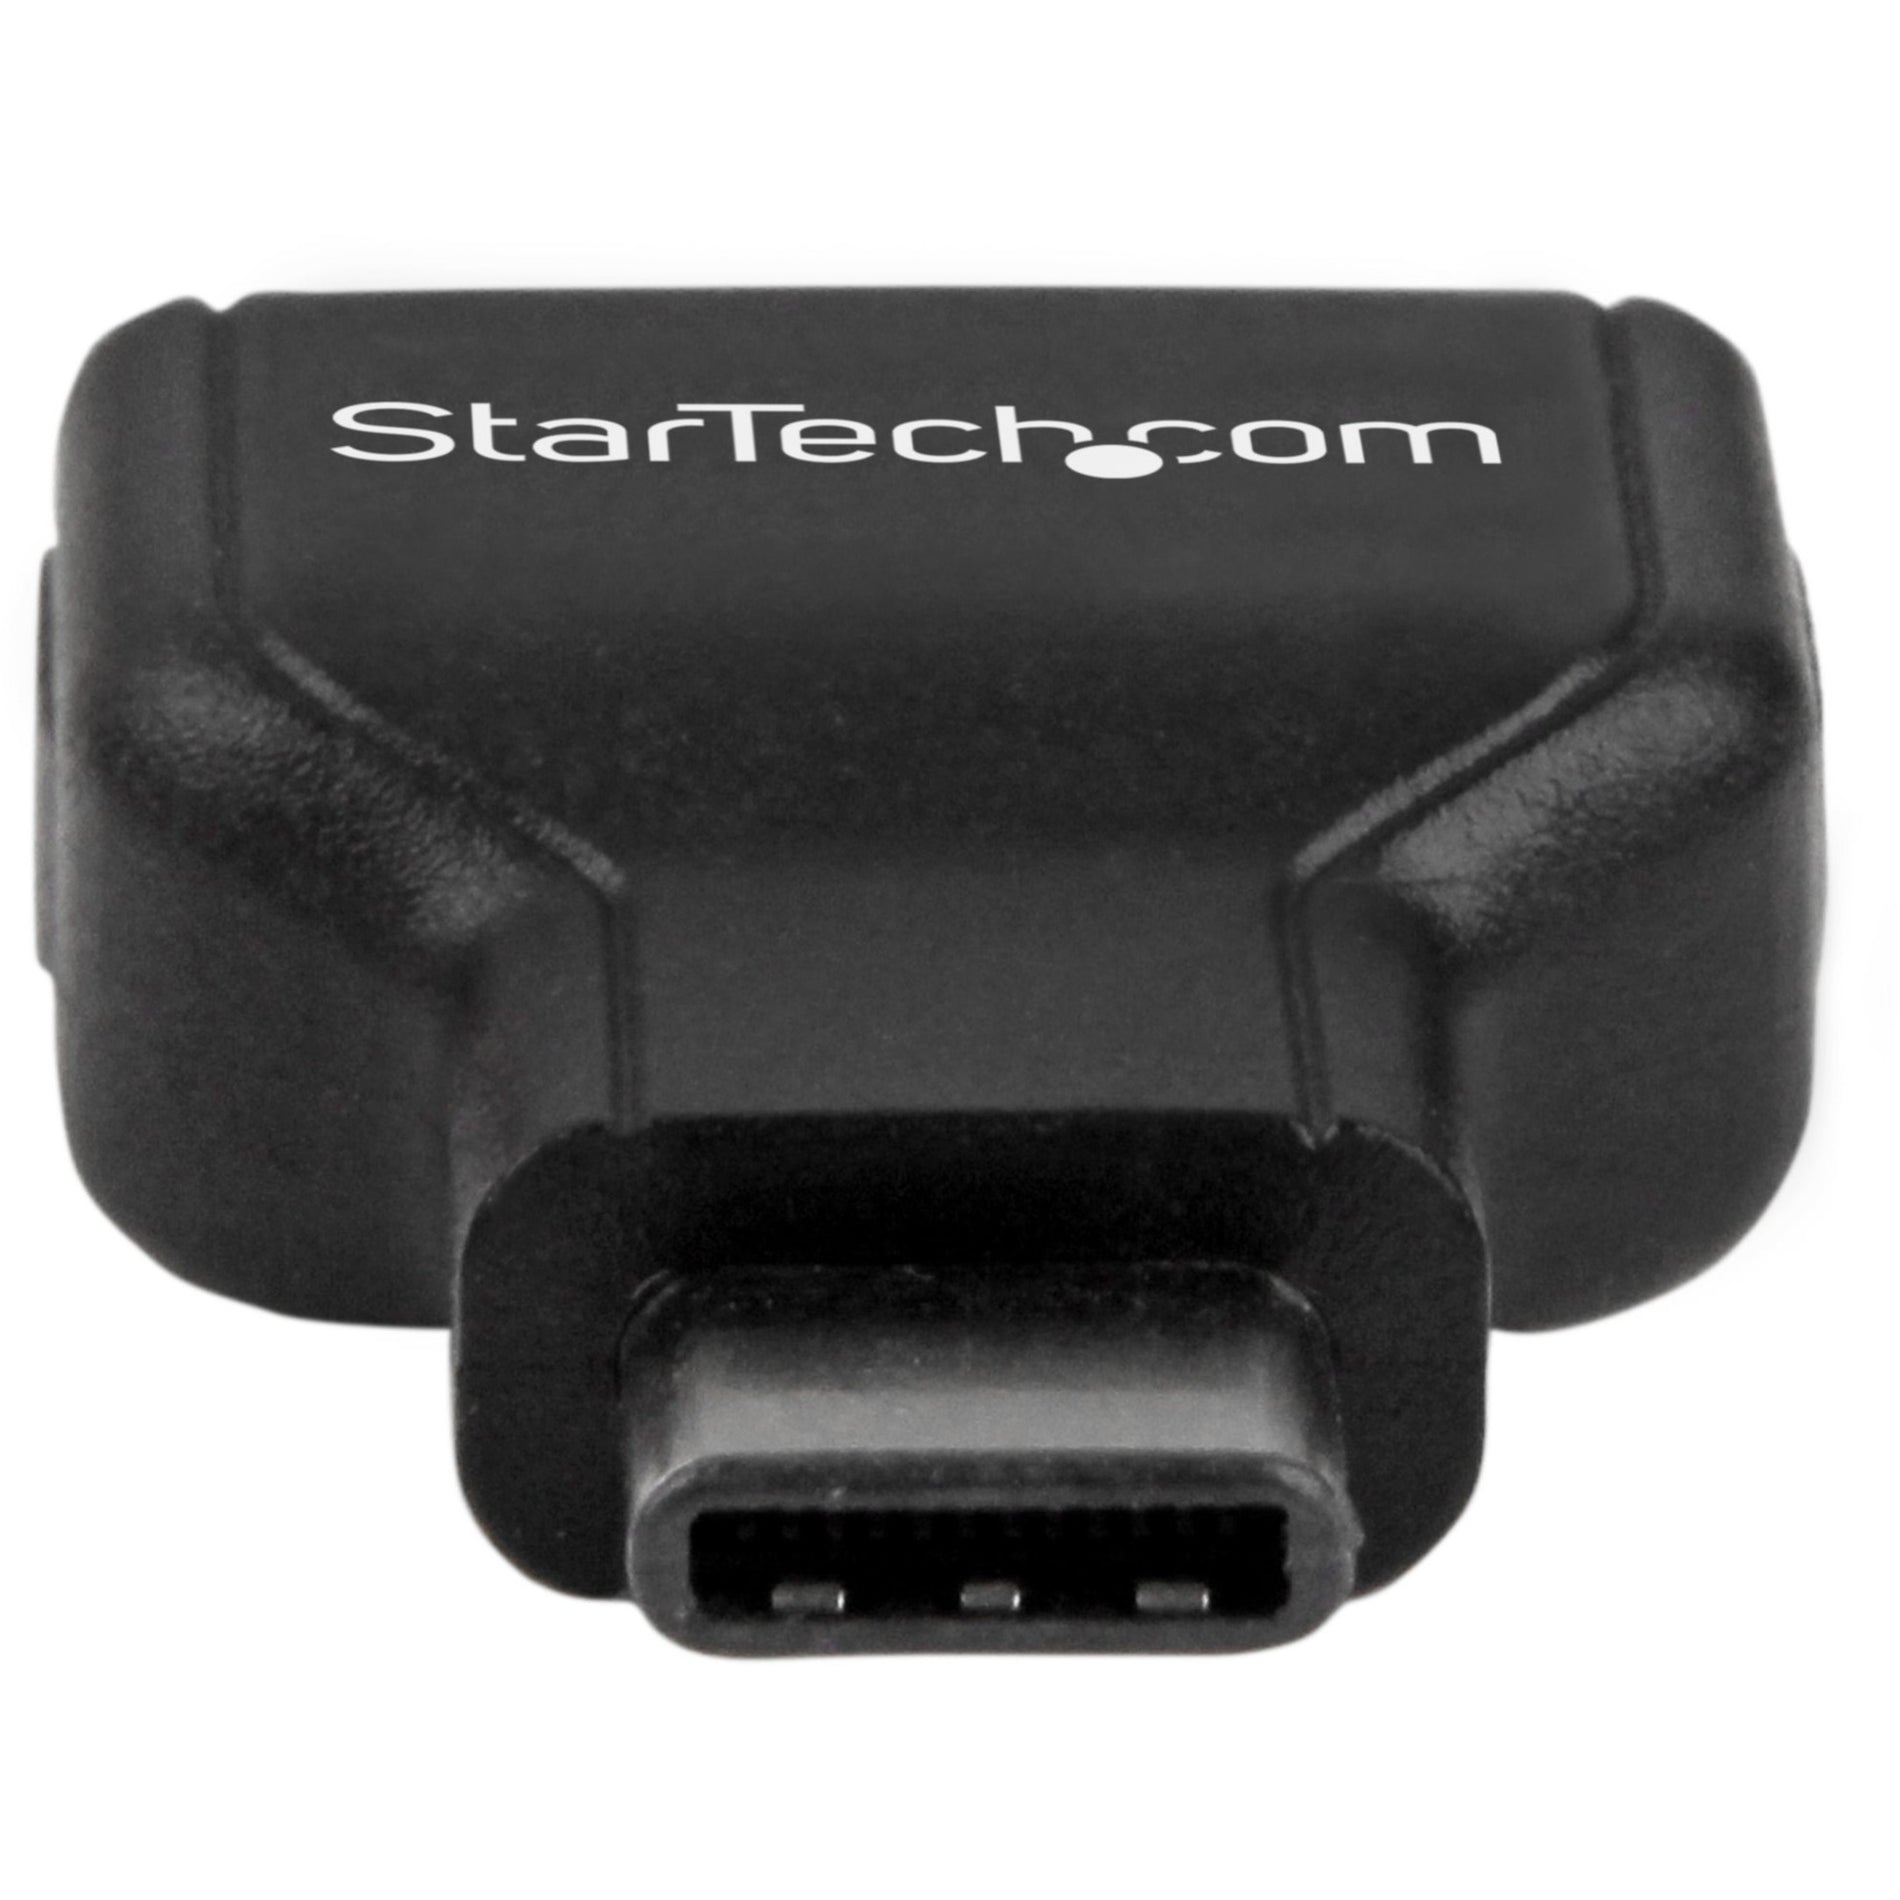 Adaptateur StarTech.com USB31CAADG USB-C vers USB-A M/F - USB 3.0 Se connecter aux ordinateurs portables USB C tels que Apple MacBook Chromebook Pixel et plus